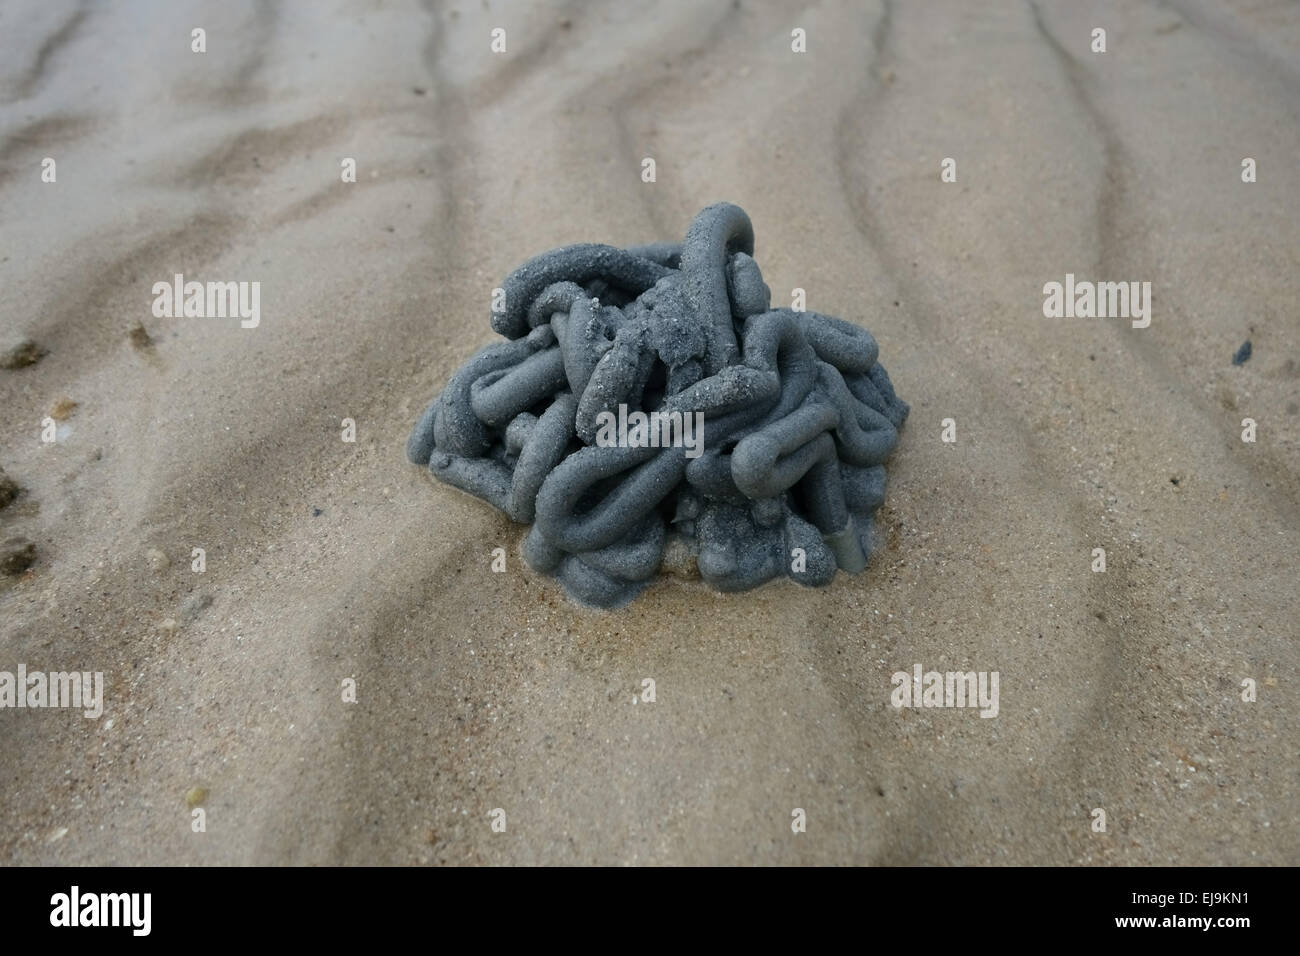 Arena oscura y arrojados en un gusano elenco creado por un gusano Hemichordata marinos en una playa en marea baja en el sur de Tailandia Foto de stock